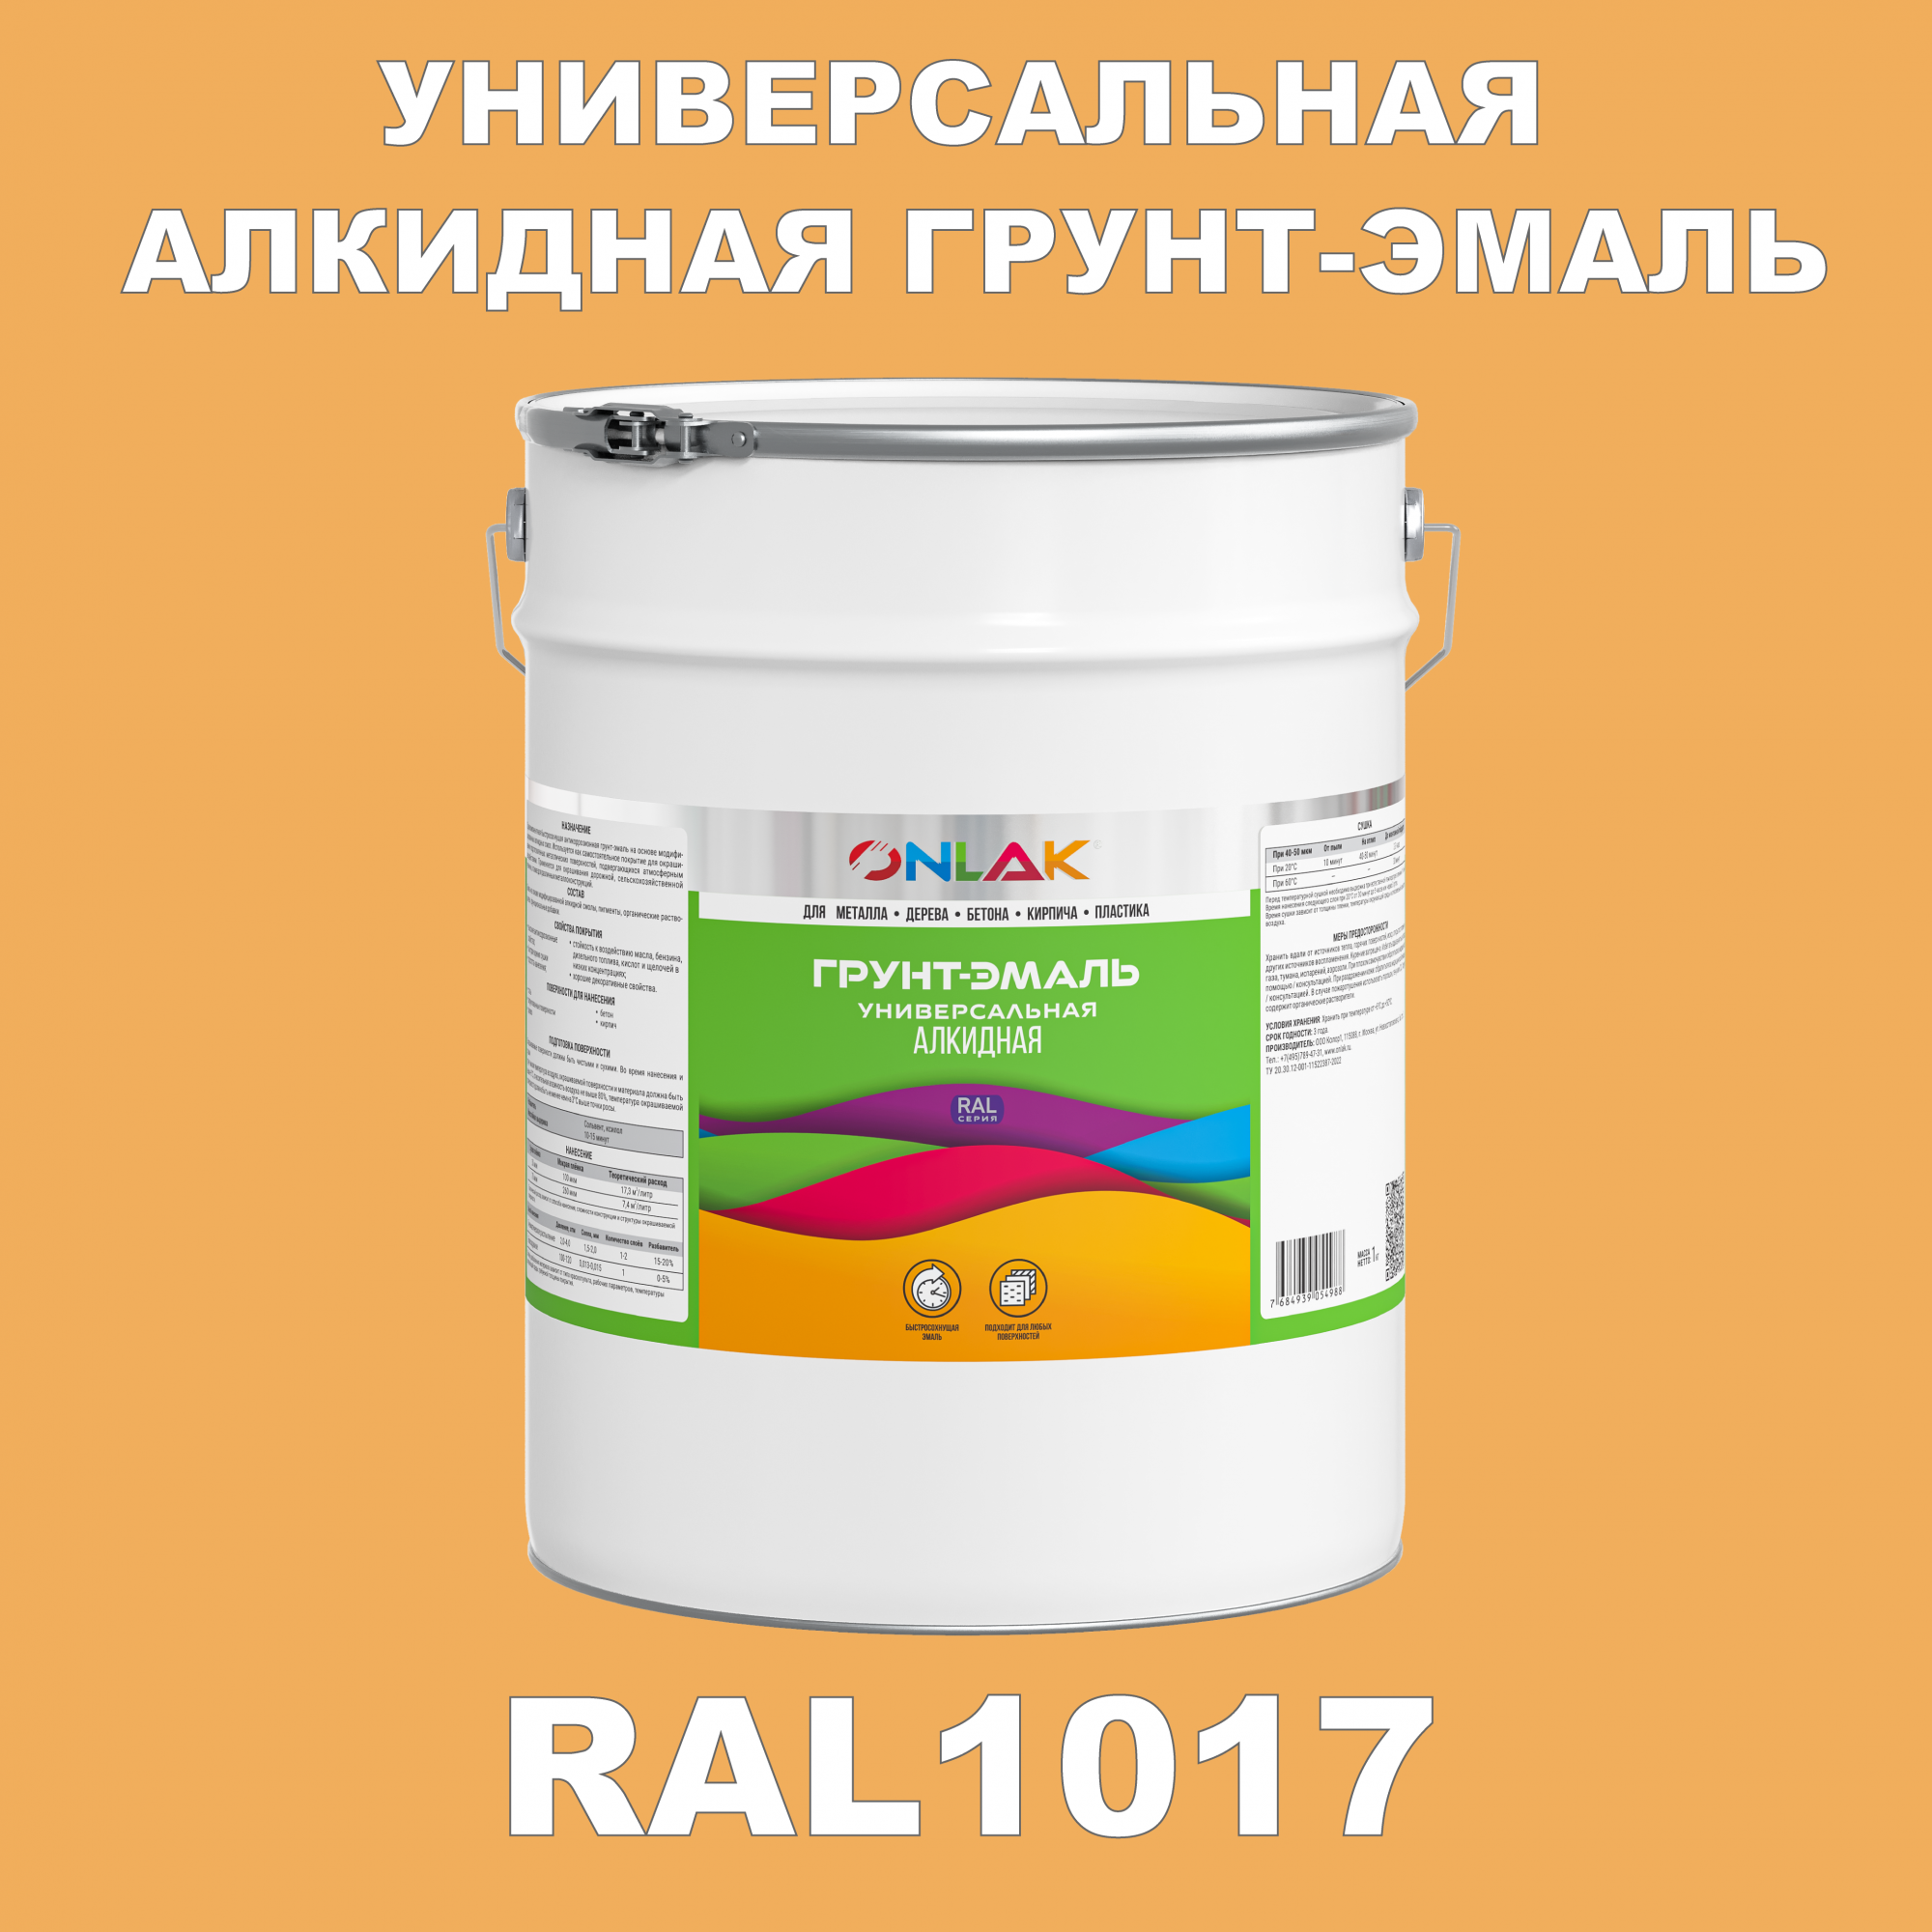 Грунт-эмаль ONLAK 1К RAL1017 антикоррозионная алкидная по металлу по ржавчине 20 кг грунт эмаль аэрозольная престиж 3в1 алкидная коричневая ral 8017 425 мл 0 425 кг